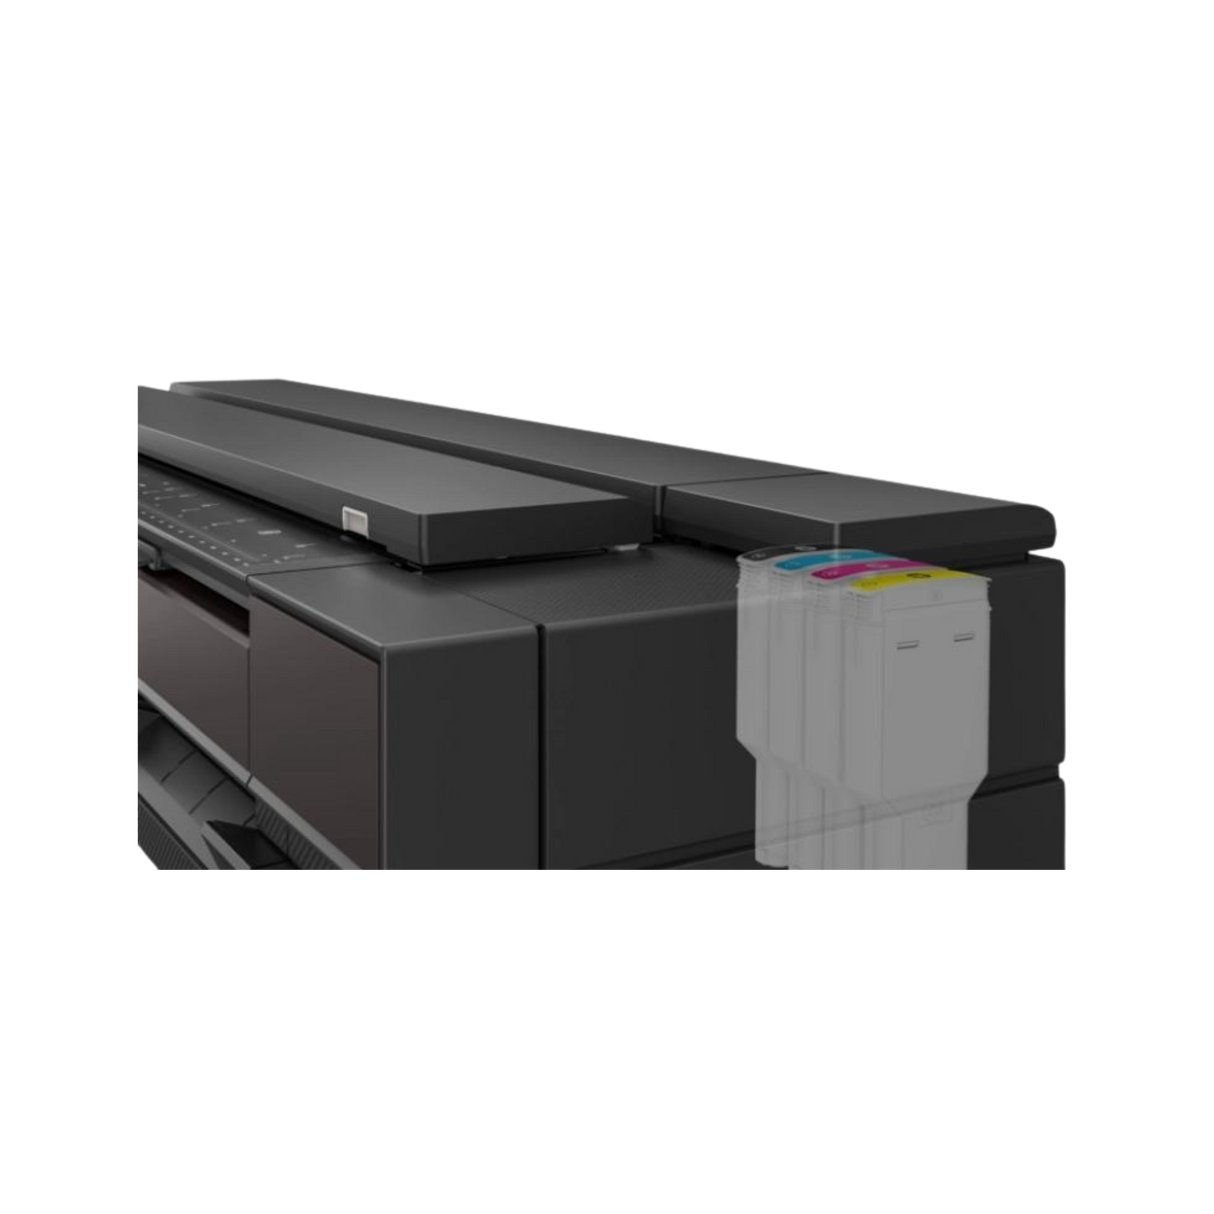 Plotter Multifuncional HP DesignJet T850 36" - 2Y9H2A | Remplazo de Hp DesingJet T830 | Imprime -> Copia -> Escanea